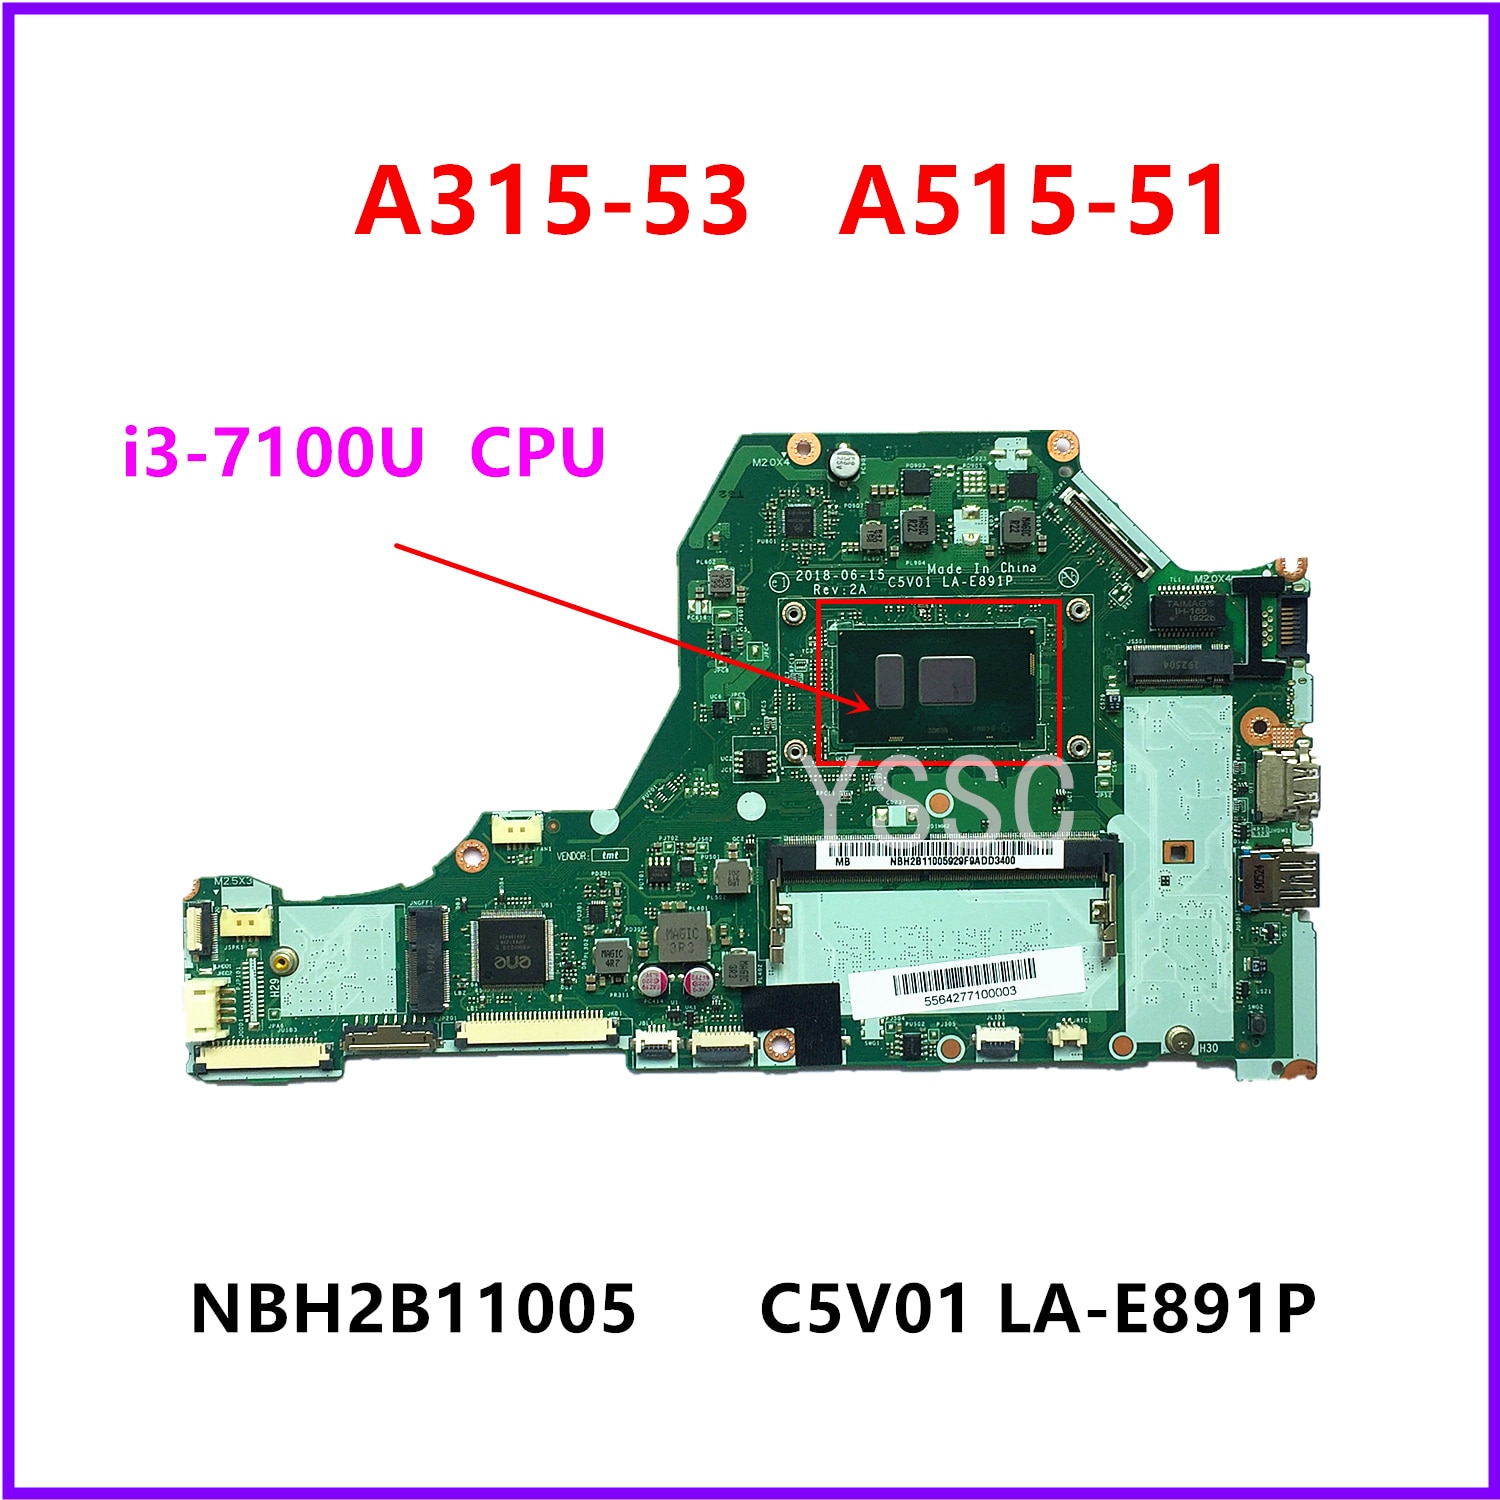 ο C5V01 LA-E891P Acer Aspire A315-53 A515-51 A61..